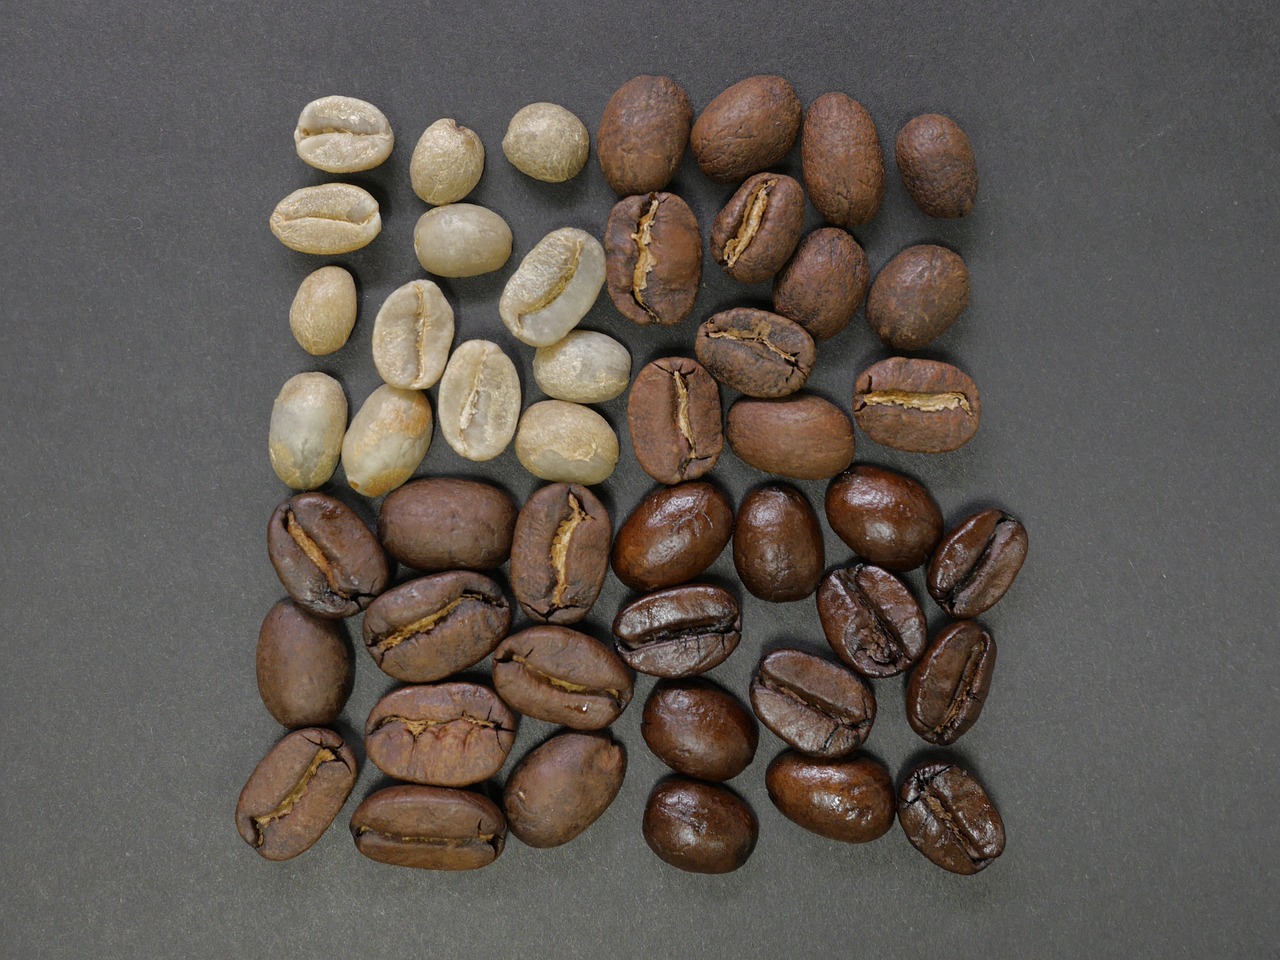 chicchi-di-caffe-selezionati-all-origine-varie-miscele-e-tipologie-arabica-e-robusta-da-vari-paesi-del-mondo-per-creare-miscele-di-alta-qualità-lavorati-artigianalmente